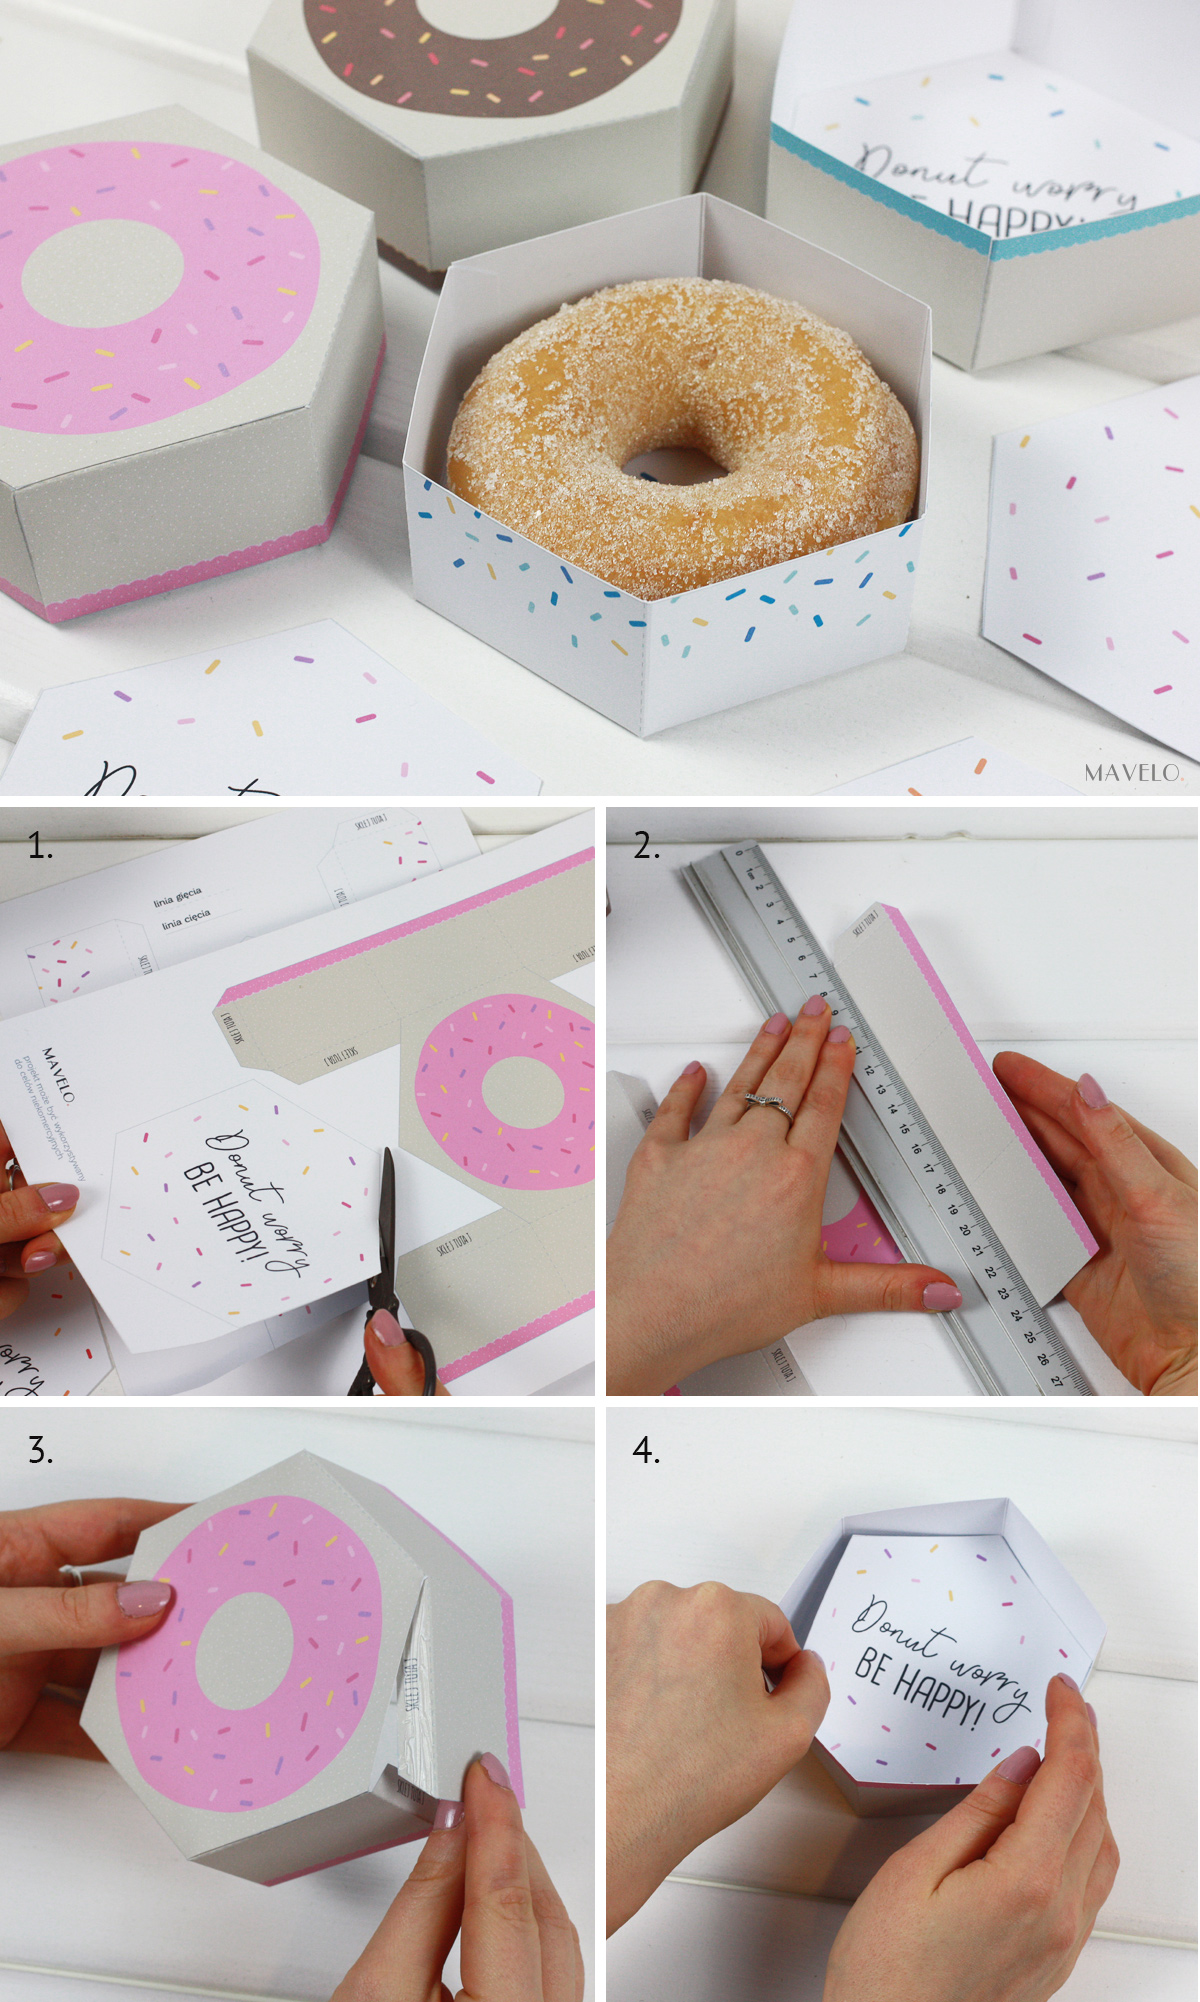 pudełko donut do druku / freebies / donut worry be happy